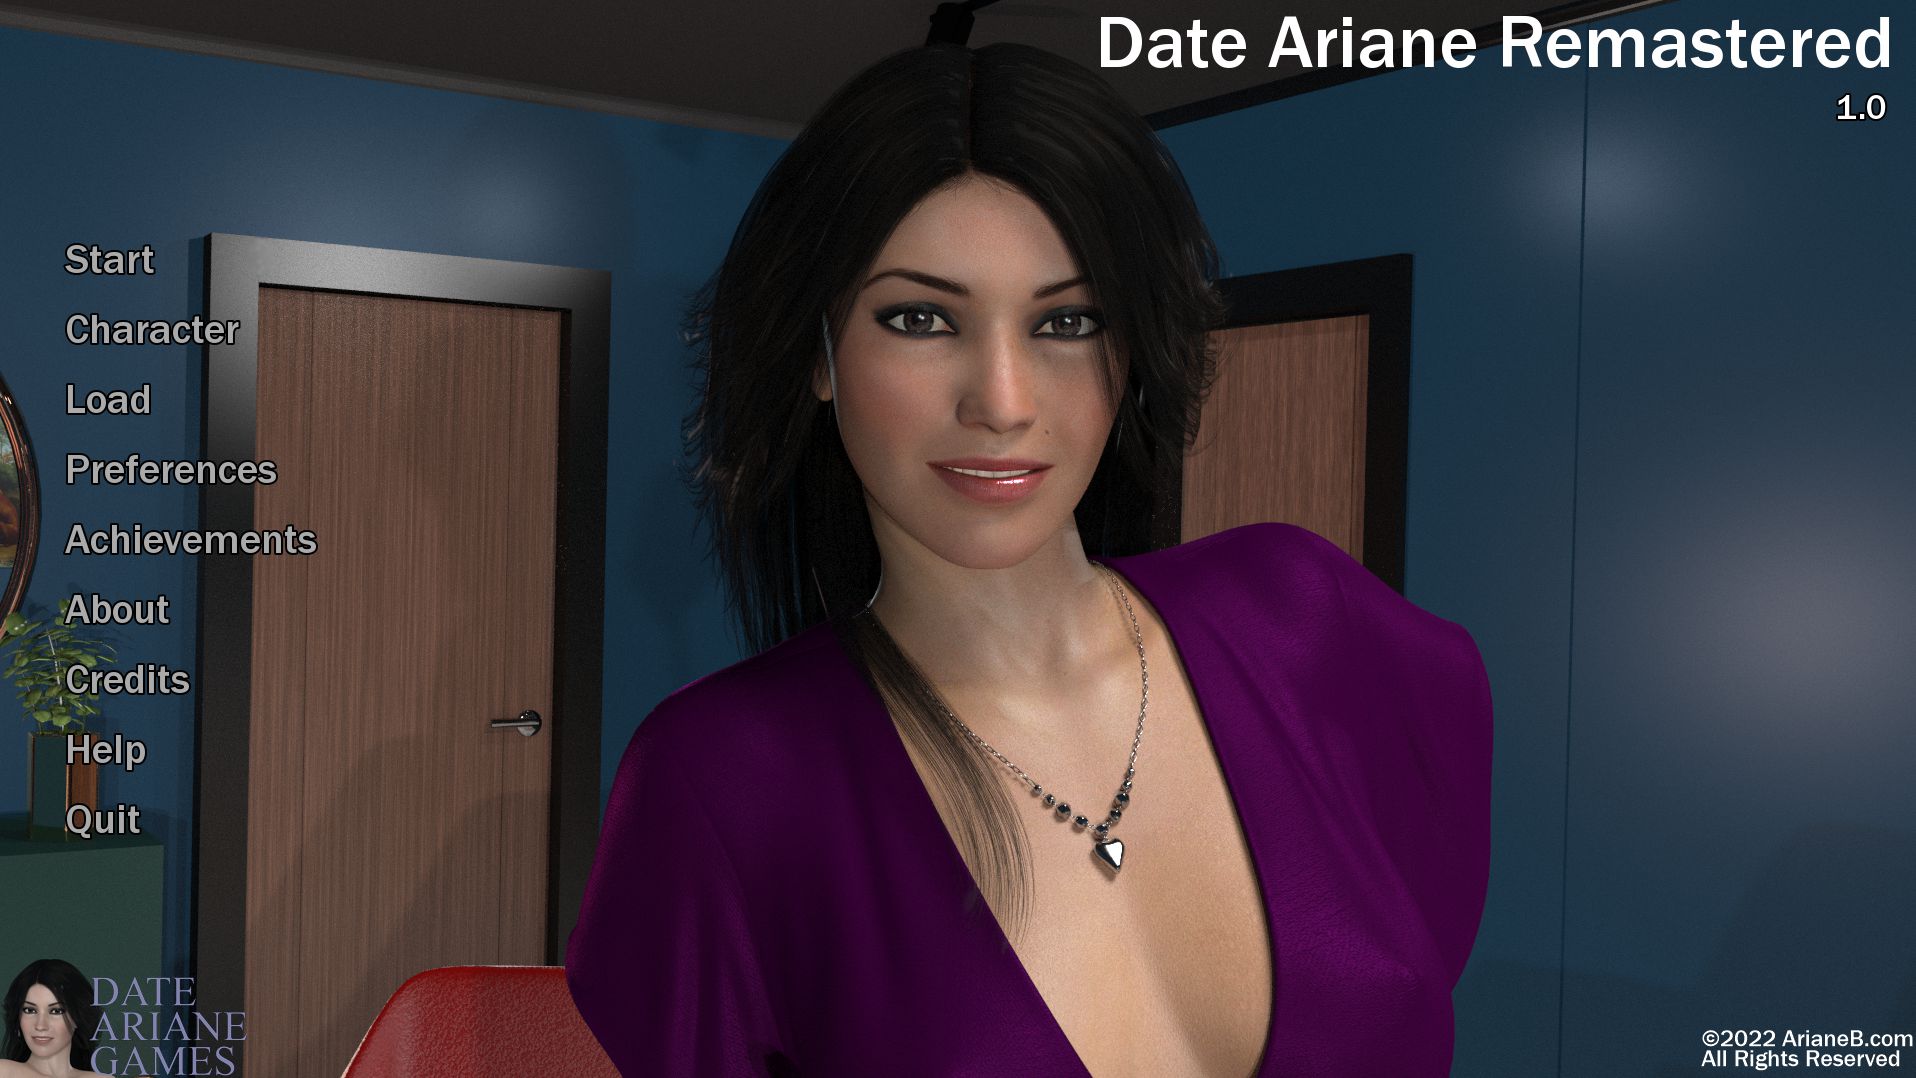 Date Ariane. 